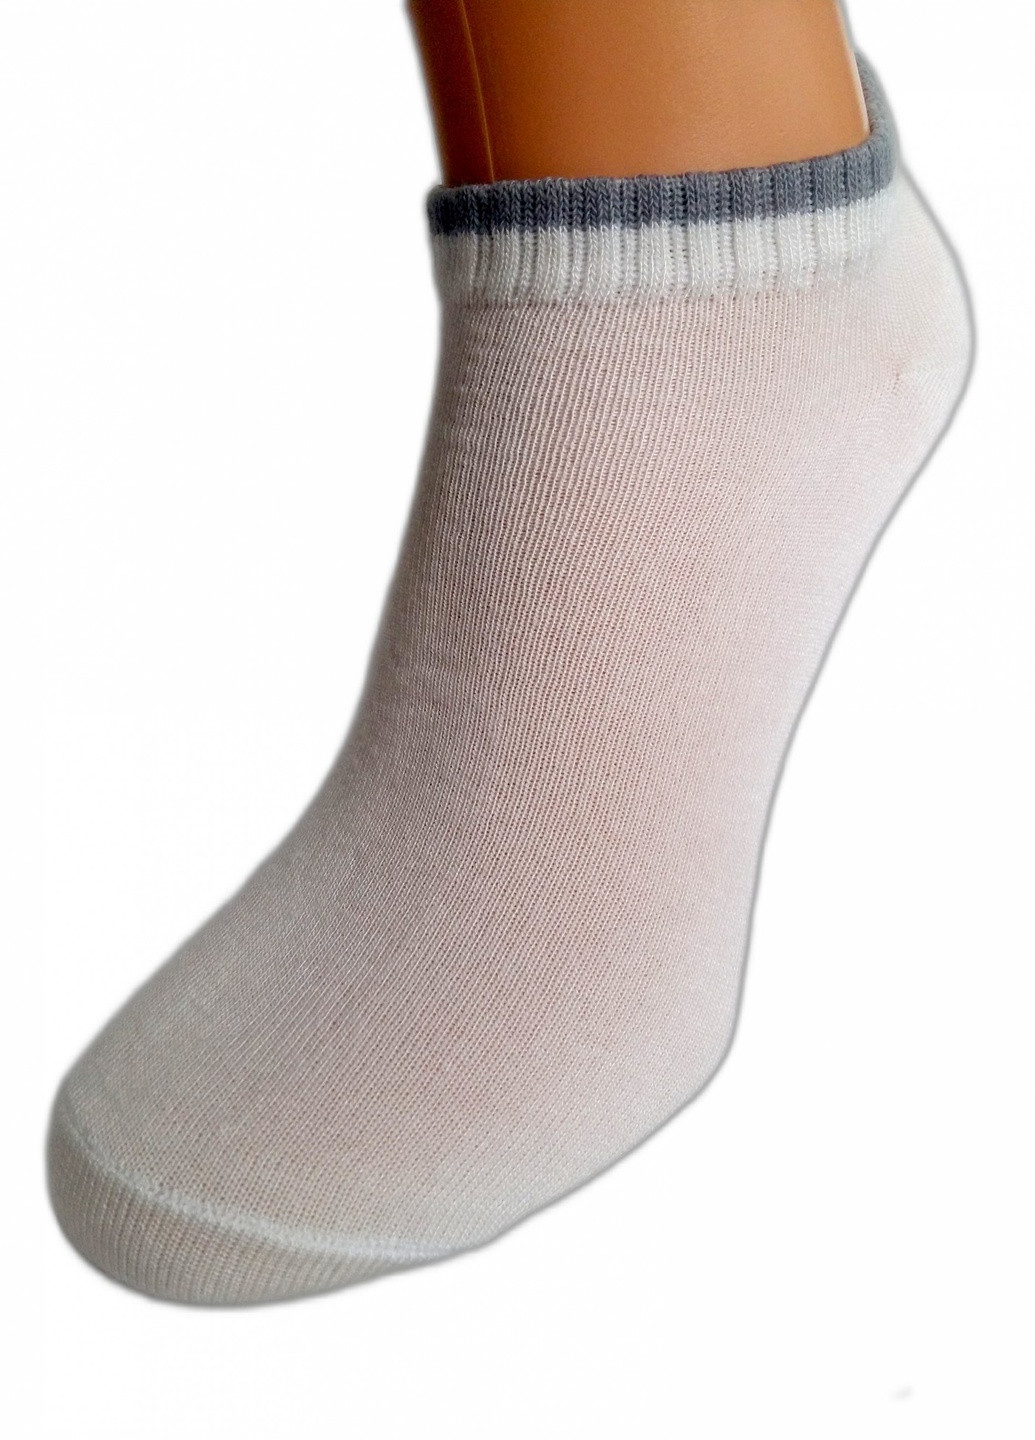 Шкарпетки чоловічі "Нова пара", бамбук укорочені 438-301 розмір 42-44(27-29) білі з смужкою НОВА ПАРА укорочена висота з ущільненім носком однотонні білі повсякденні